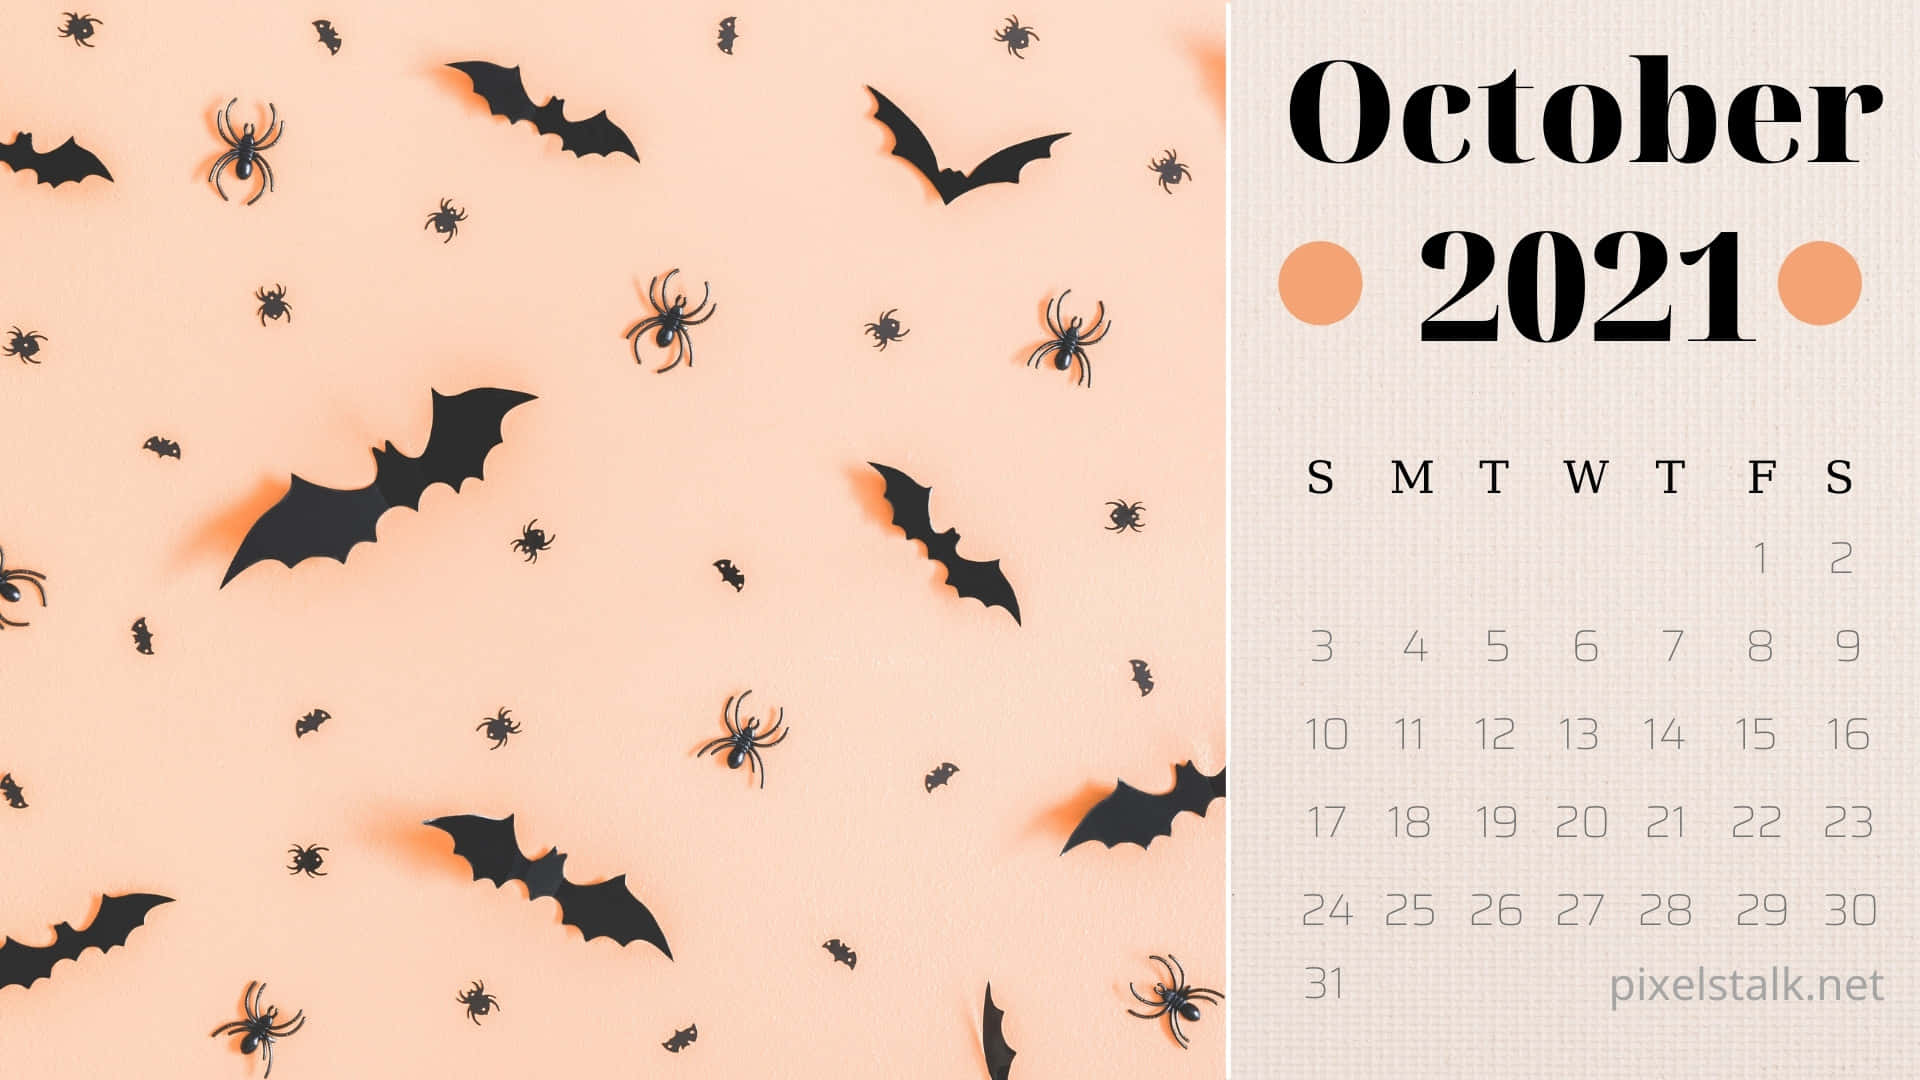 October 2021 Calendar With Bats And Bats Wallpaper